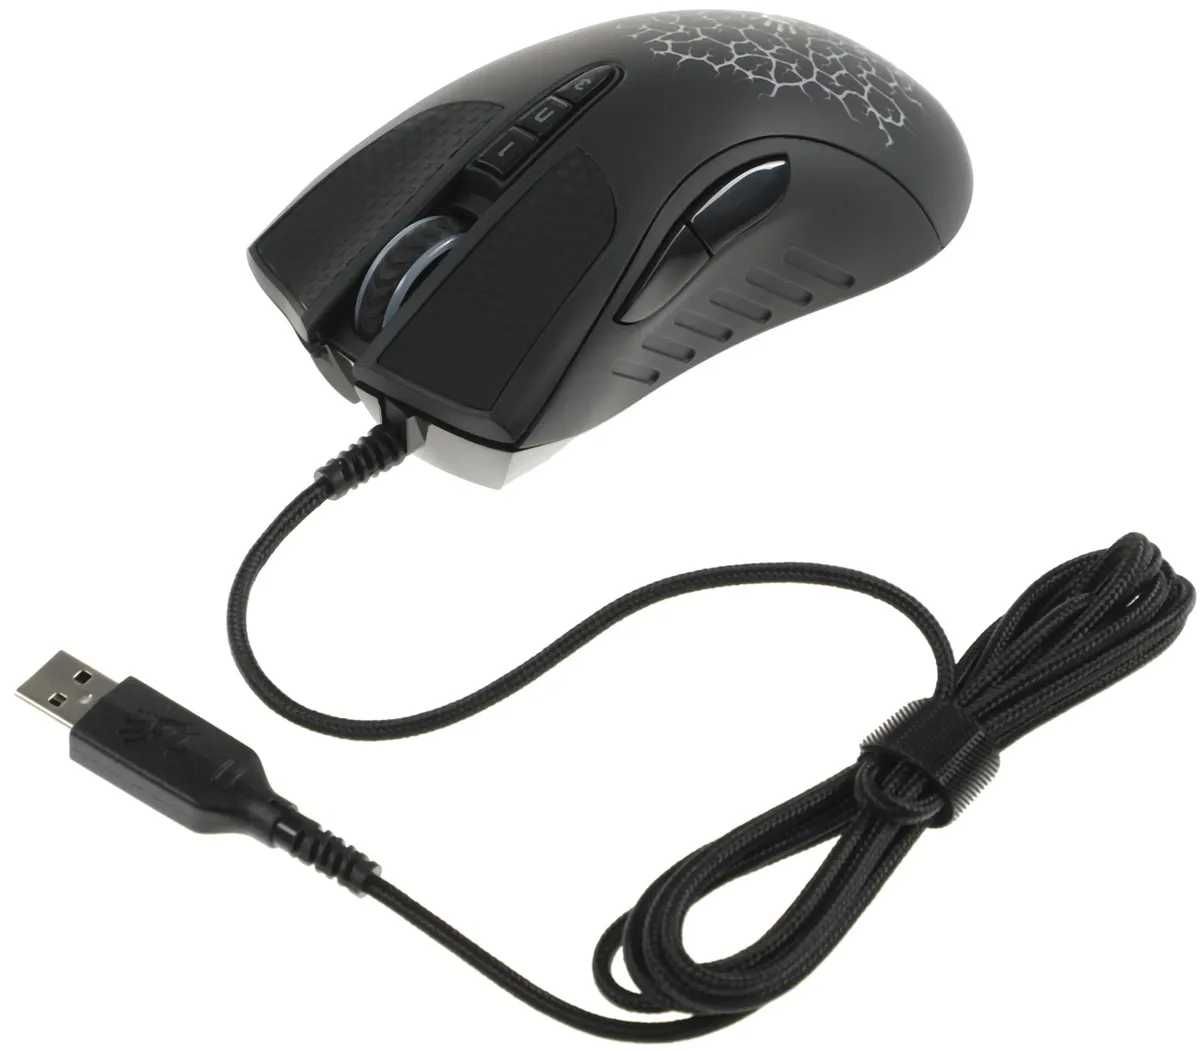 Проводная игровая мышь Bloody A90 BLACK Light Strike Gaming Mouse